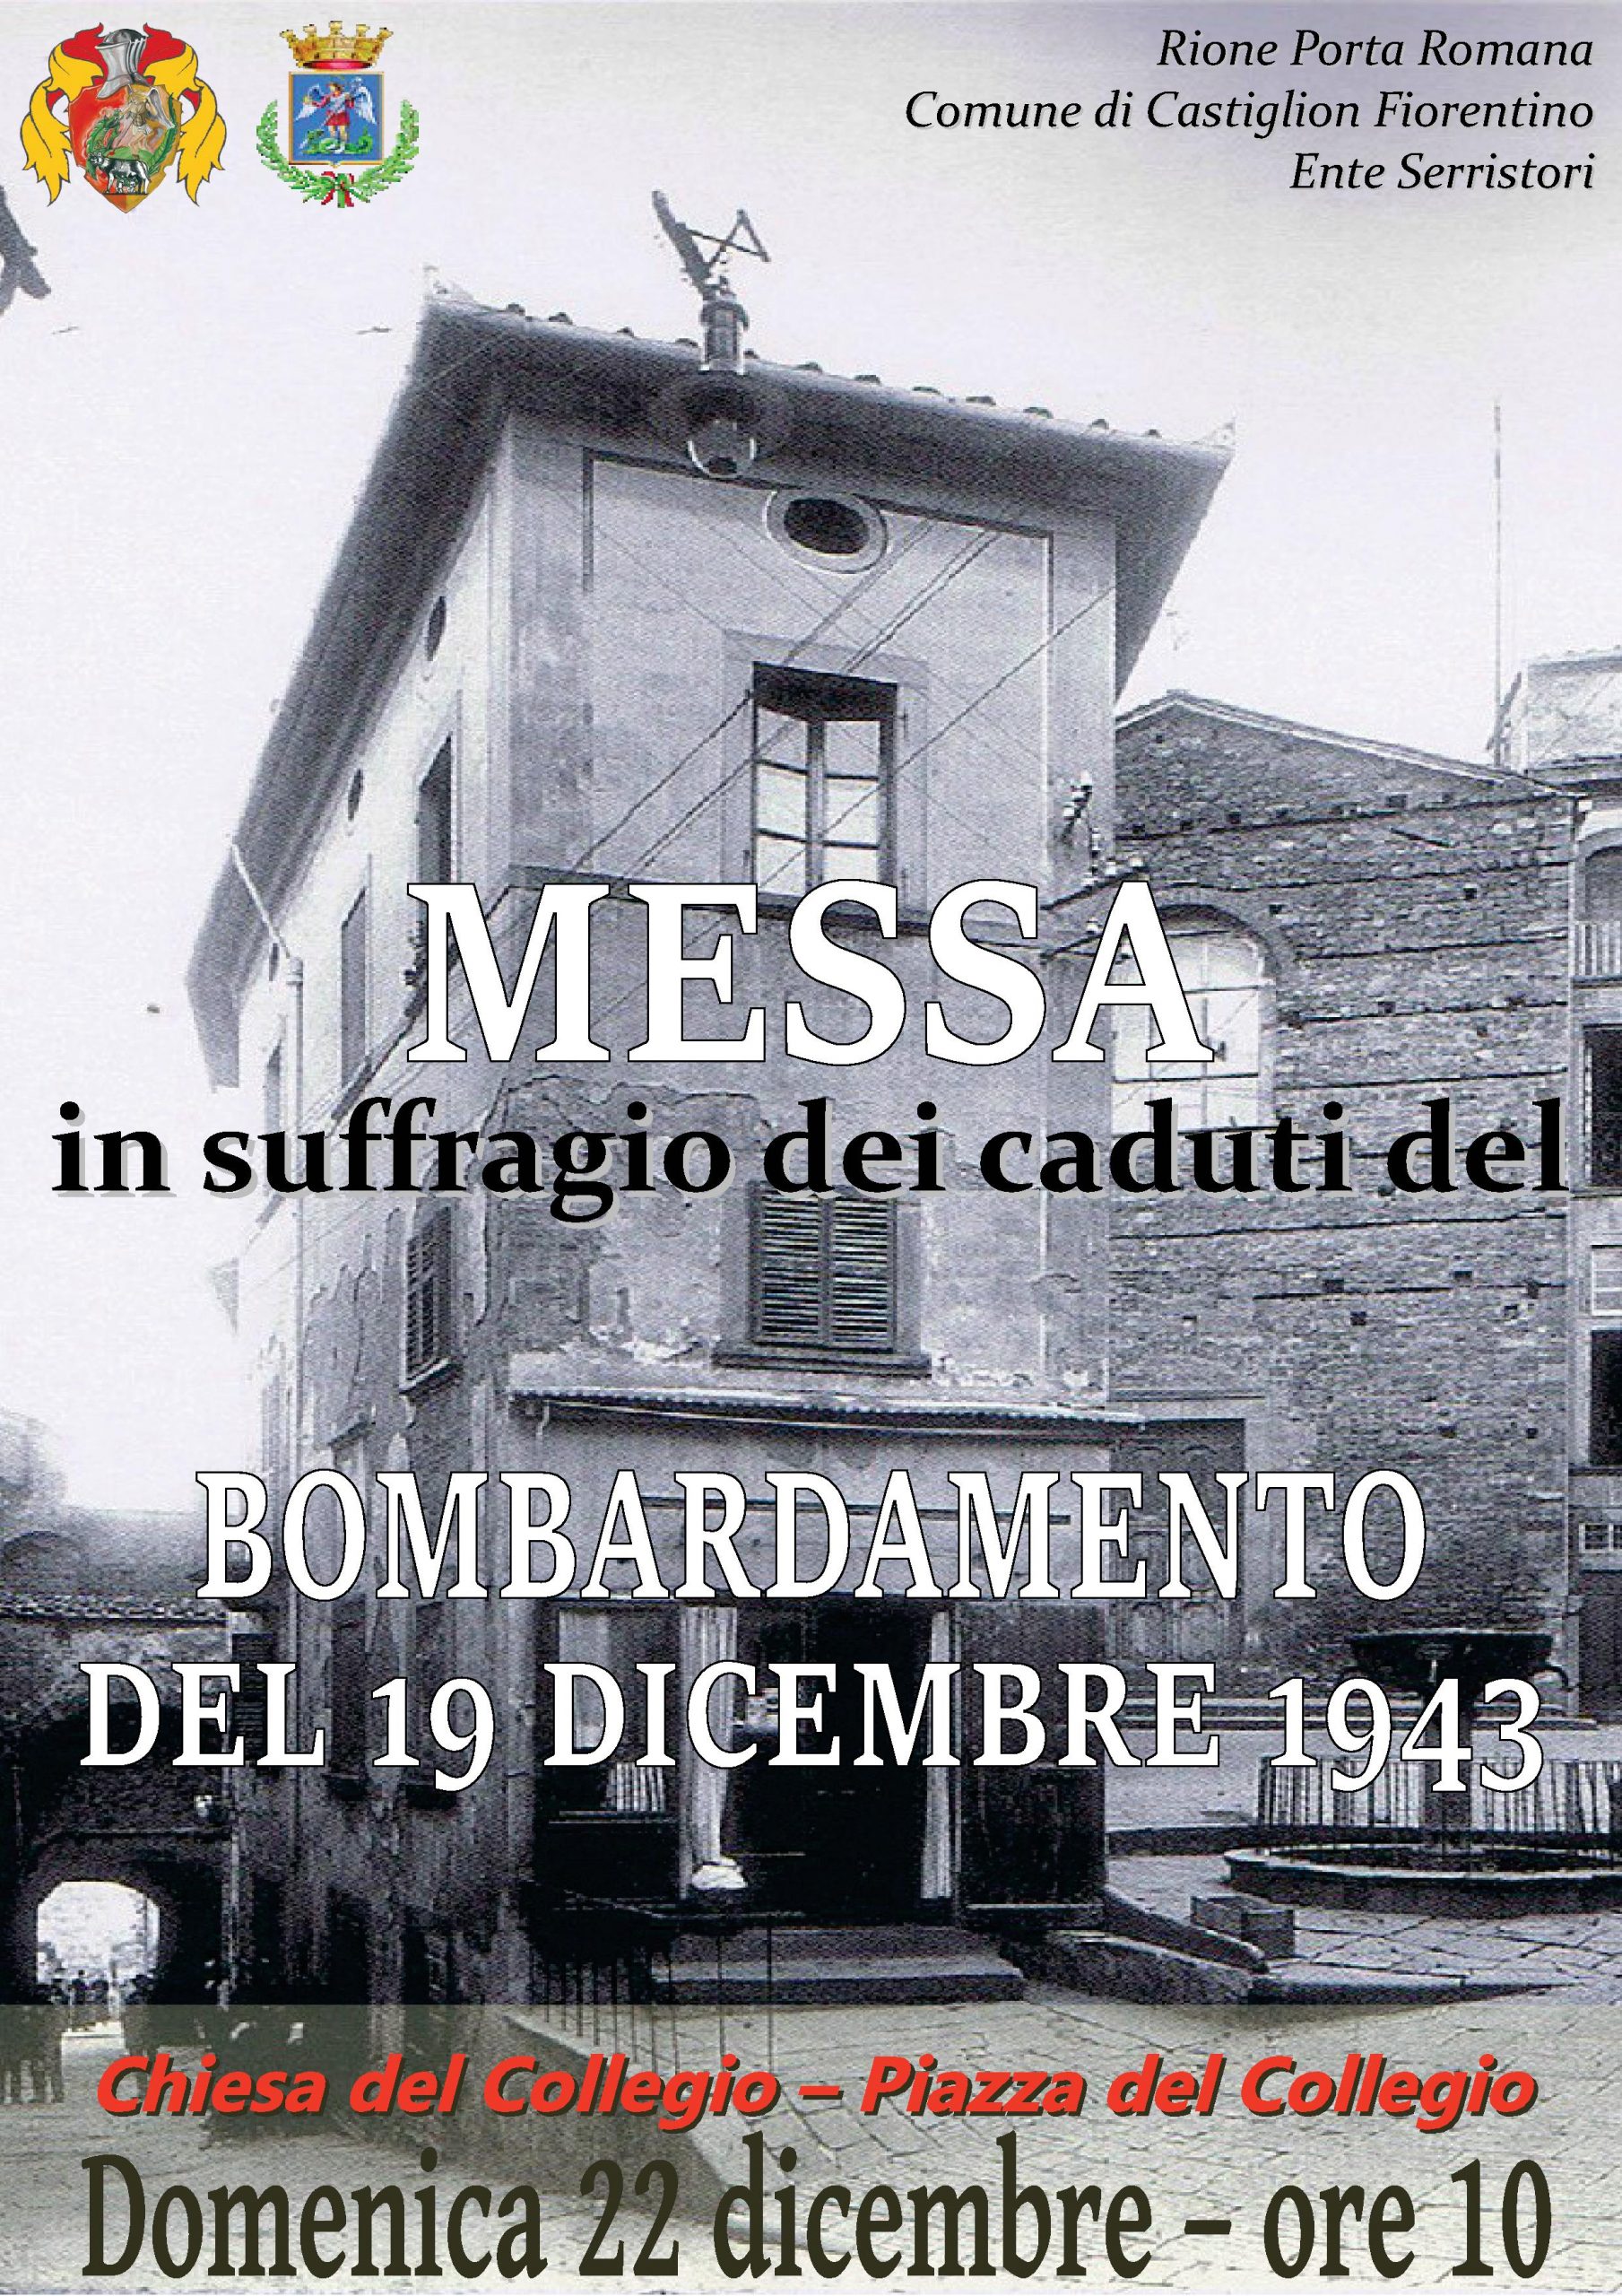 Domenica 22 Santa Messa in suffragio delle vittime del bombardamento del 19 dicembre 1943